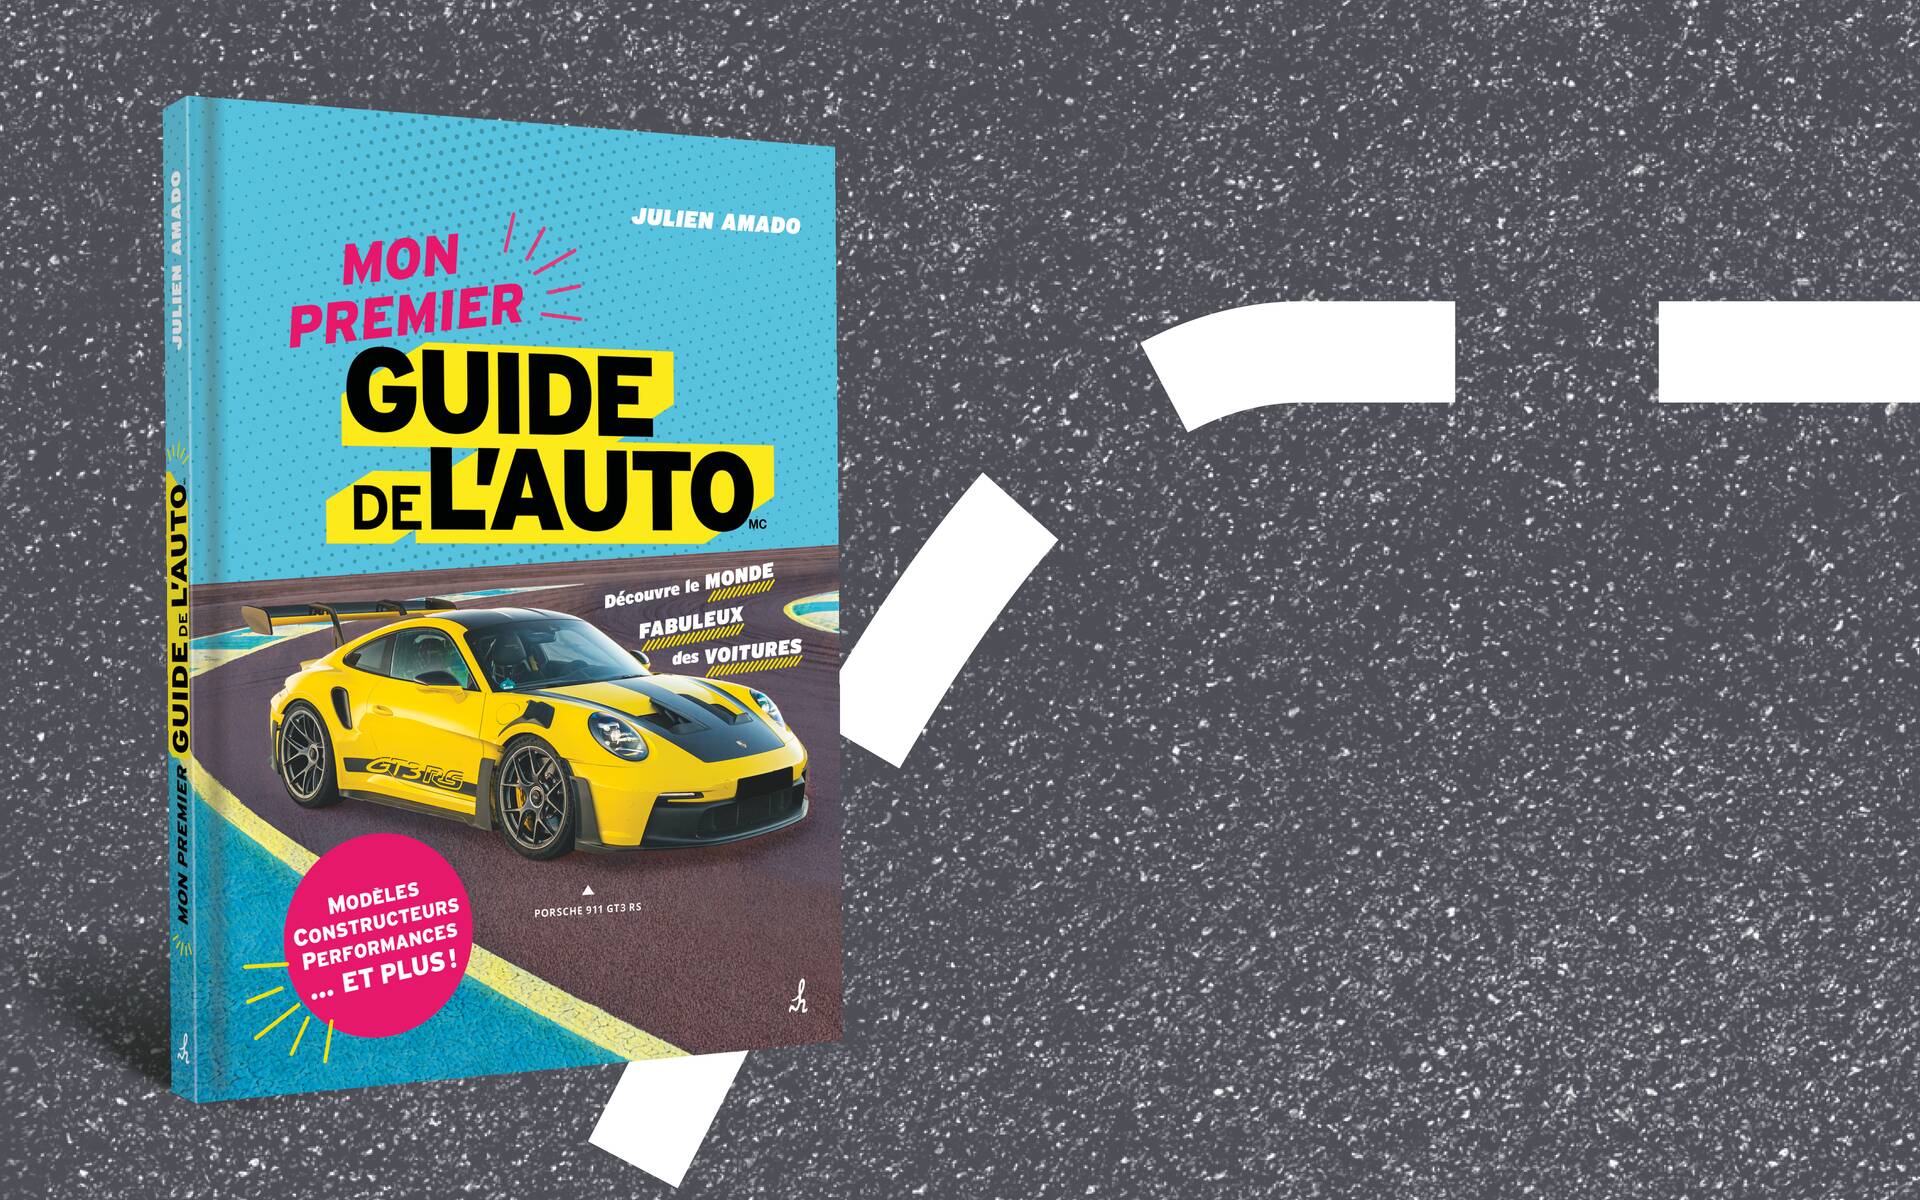 Mon premier Guide de l'auto : voici notre nouveau livre destiné aux enfants  - Guide Auto